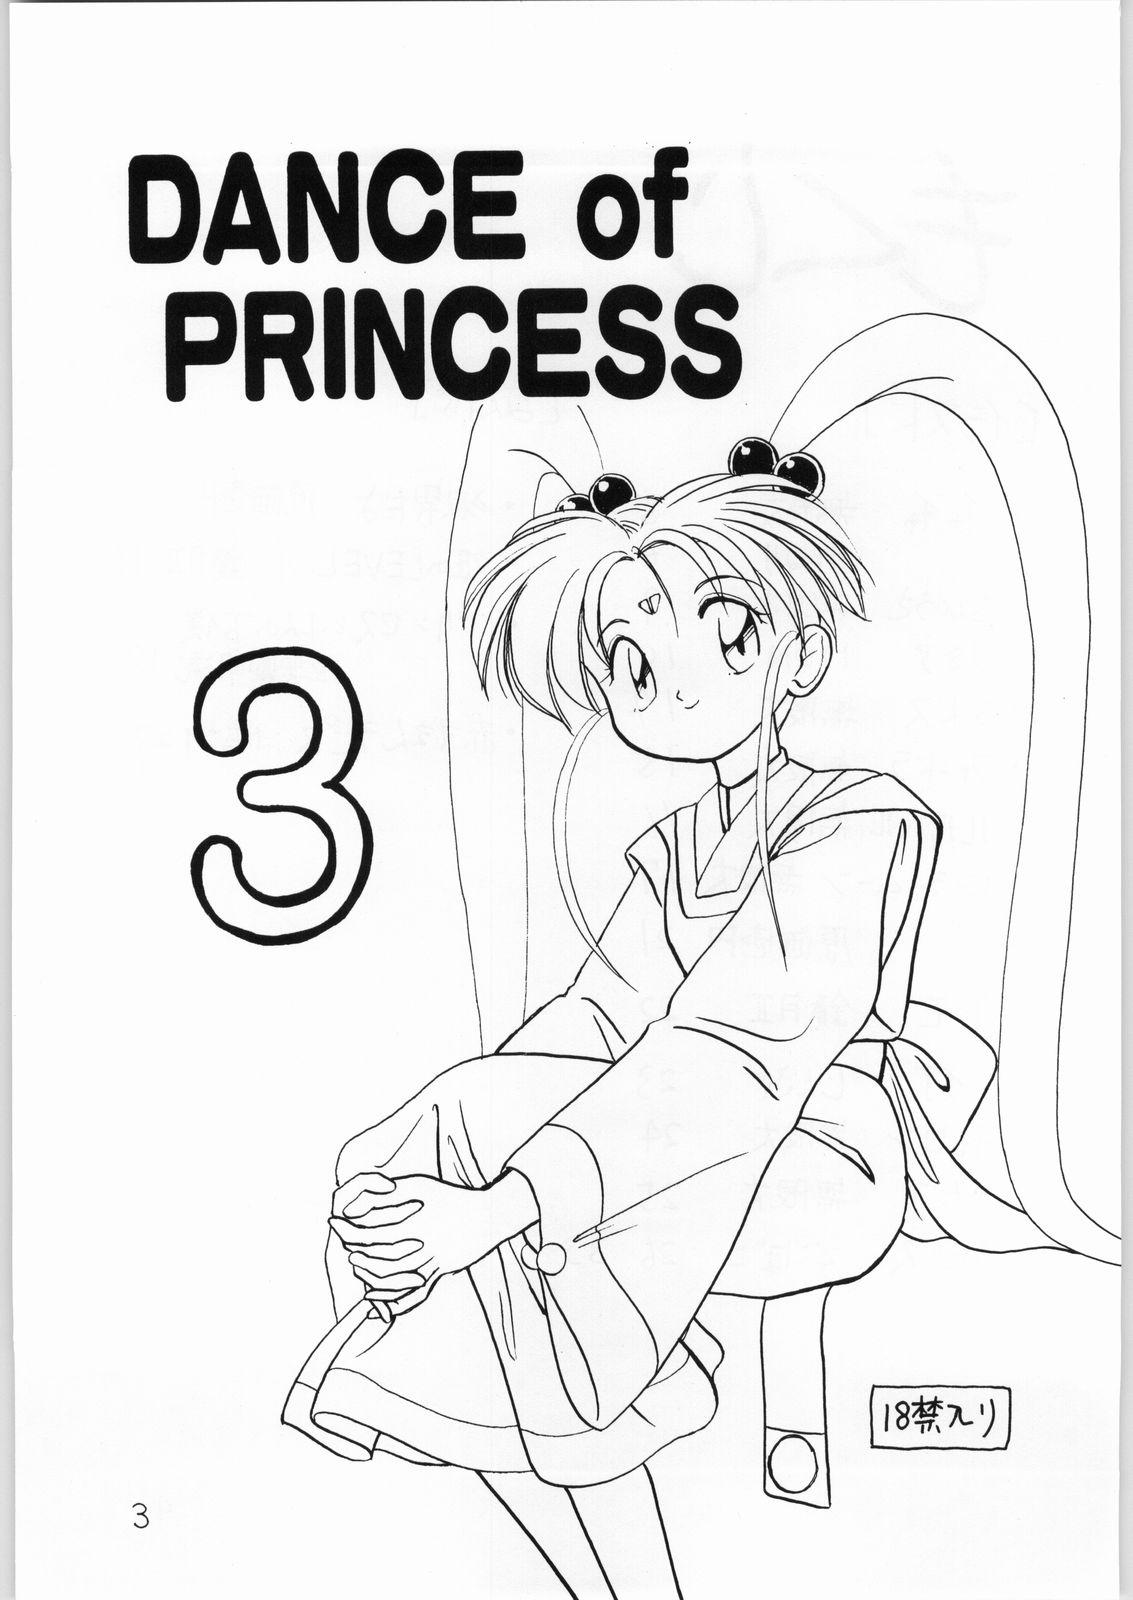 Longhair Dance of Princess 3 - Sailor moon Tenchi muyo Akazukin cha cha Minky momo Ng knight lamune and 40 Smoking - Page 2